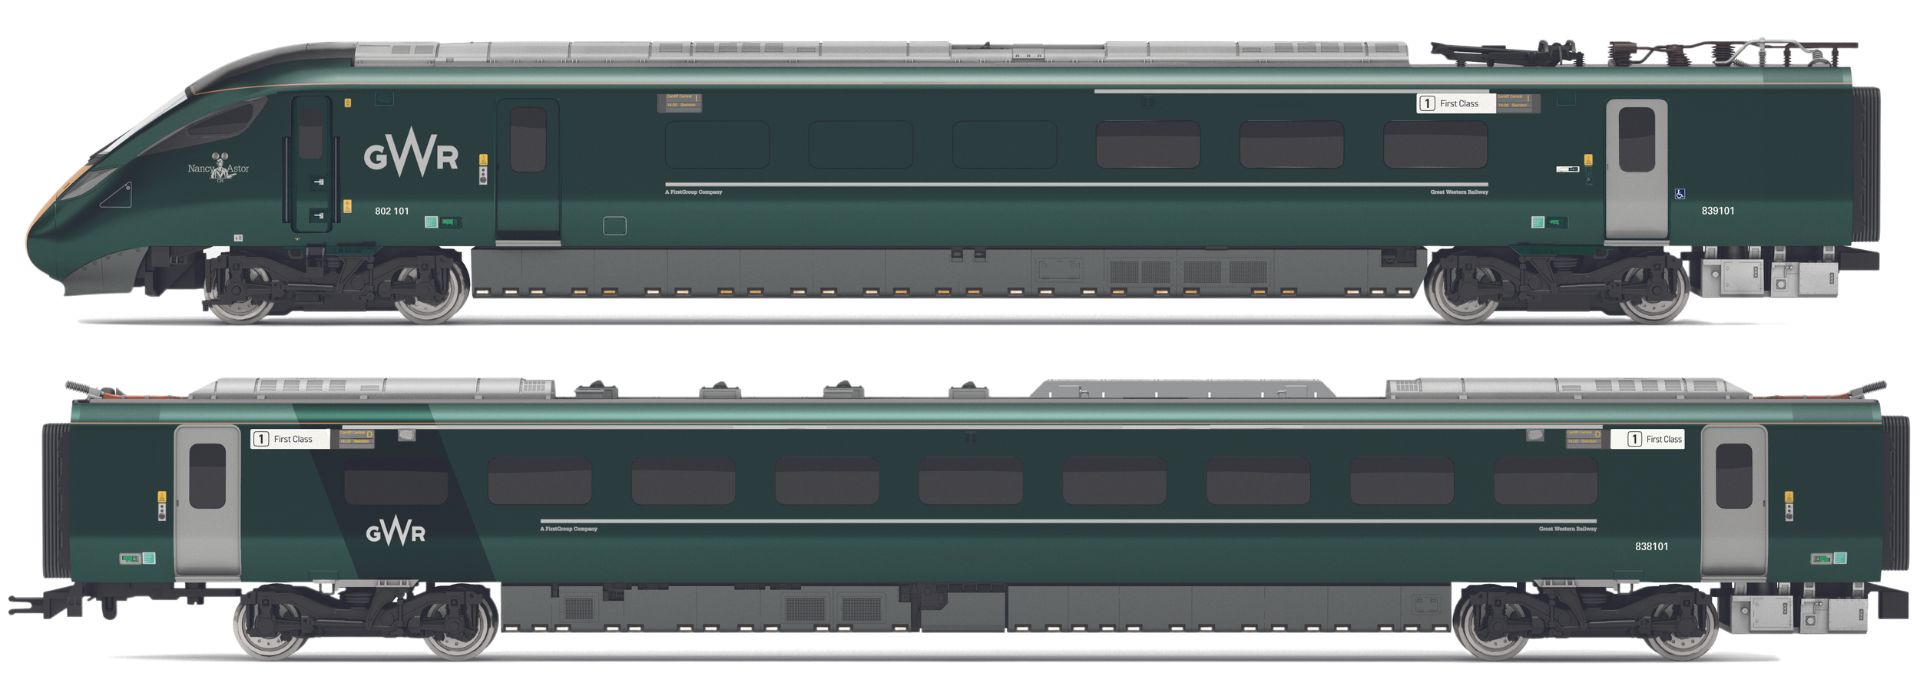 Hornby OO Gauge (1:76 Scale) Class 802 IET